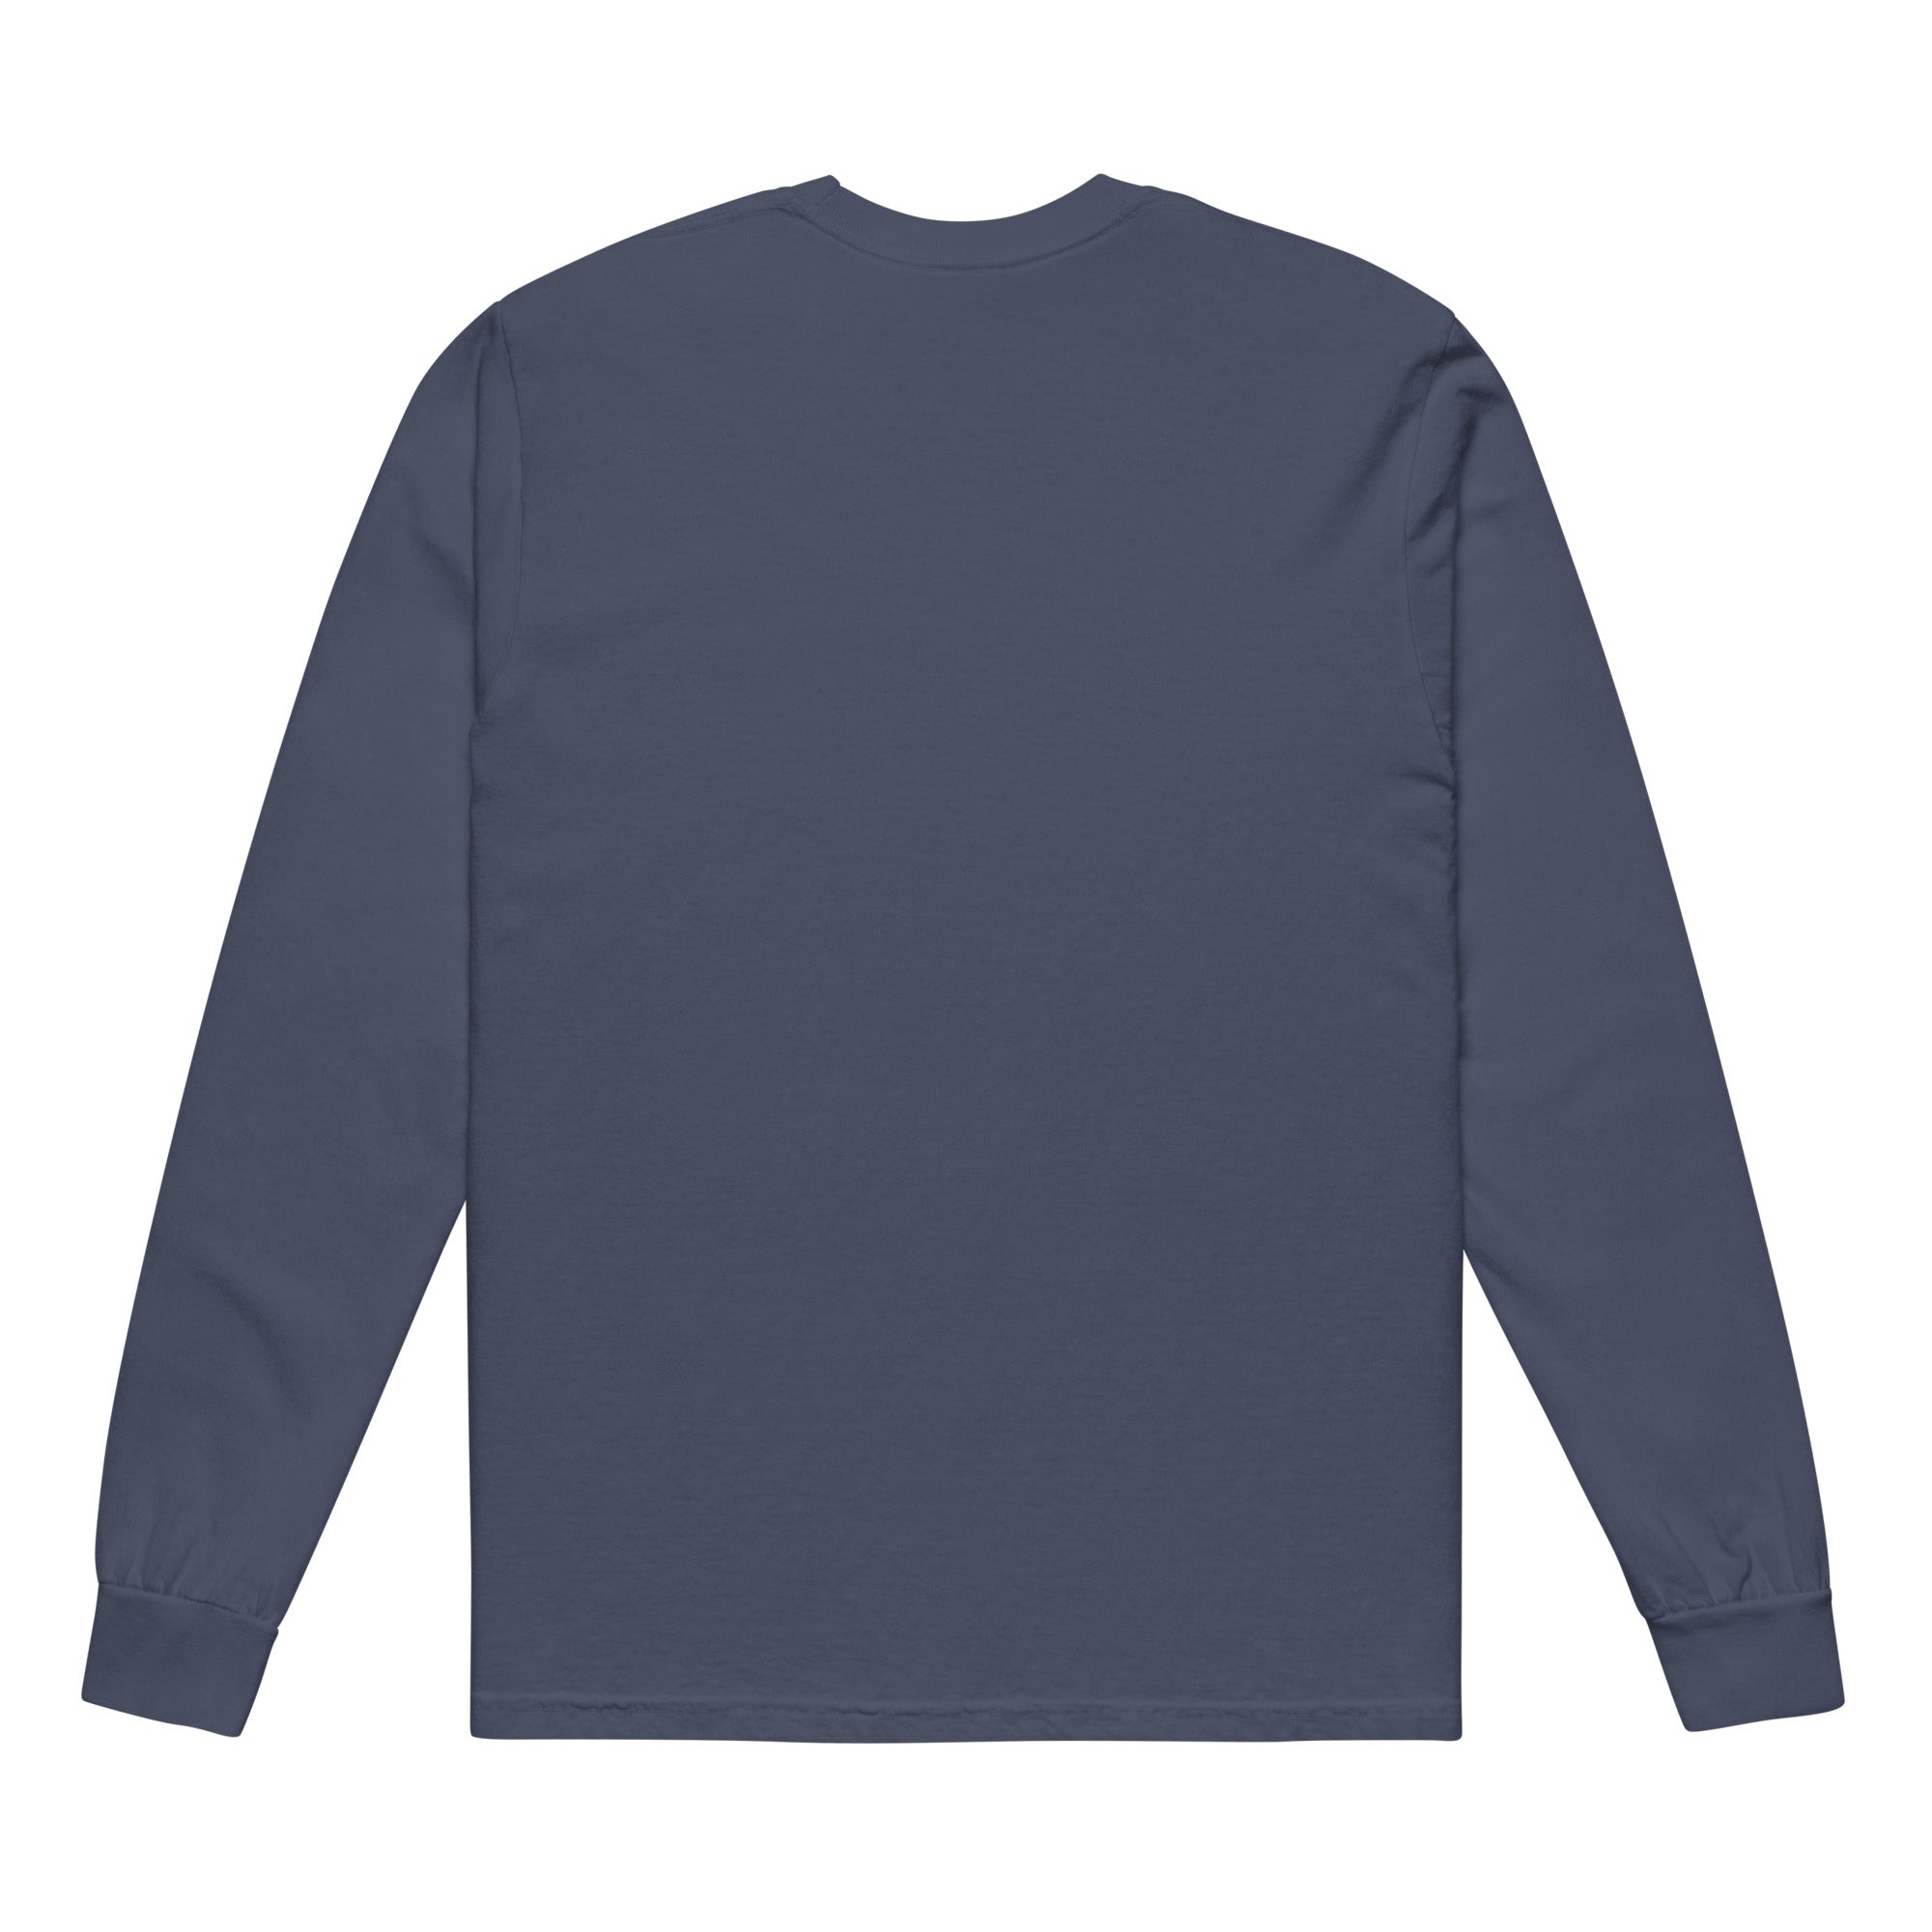 Valknut Garment-dyed heavyweight long-sleeve shirt